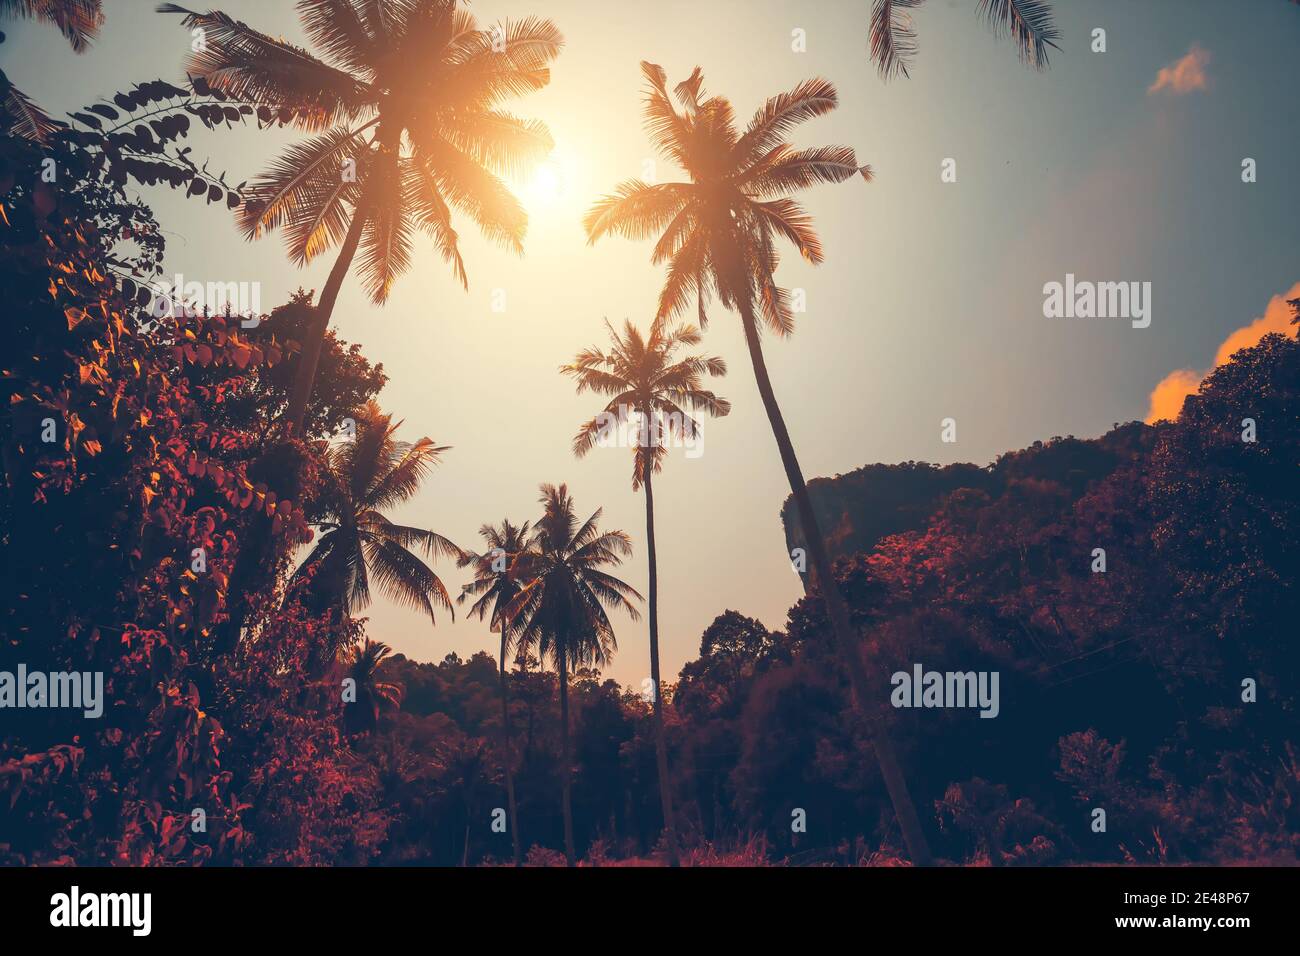 Herbst Thailand Jungle Resort: Sonne scheint über Bäumen im tropischen Wald. Majestätisch Asien exotische Naturlandschaft von Laub Regenwald. Erstaunliche Thai-Landschaft in weichen warmen Herbsttönen an sonnigen Tagen Stockfoto